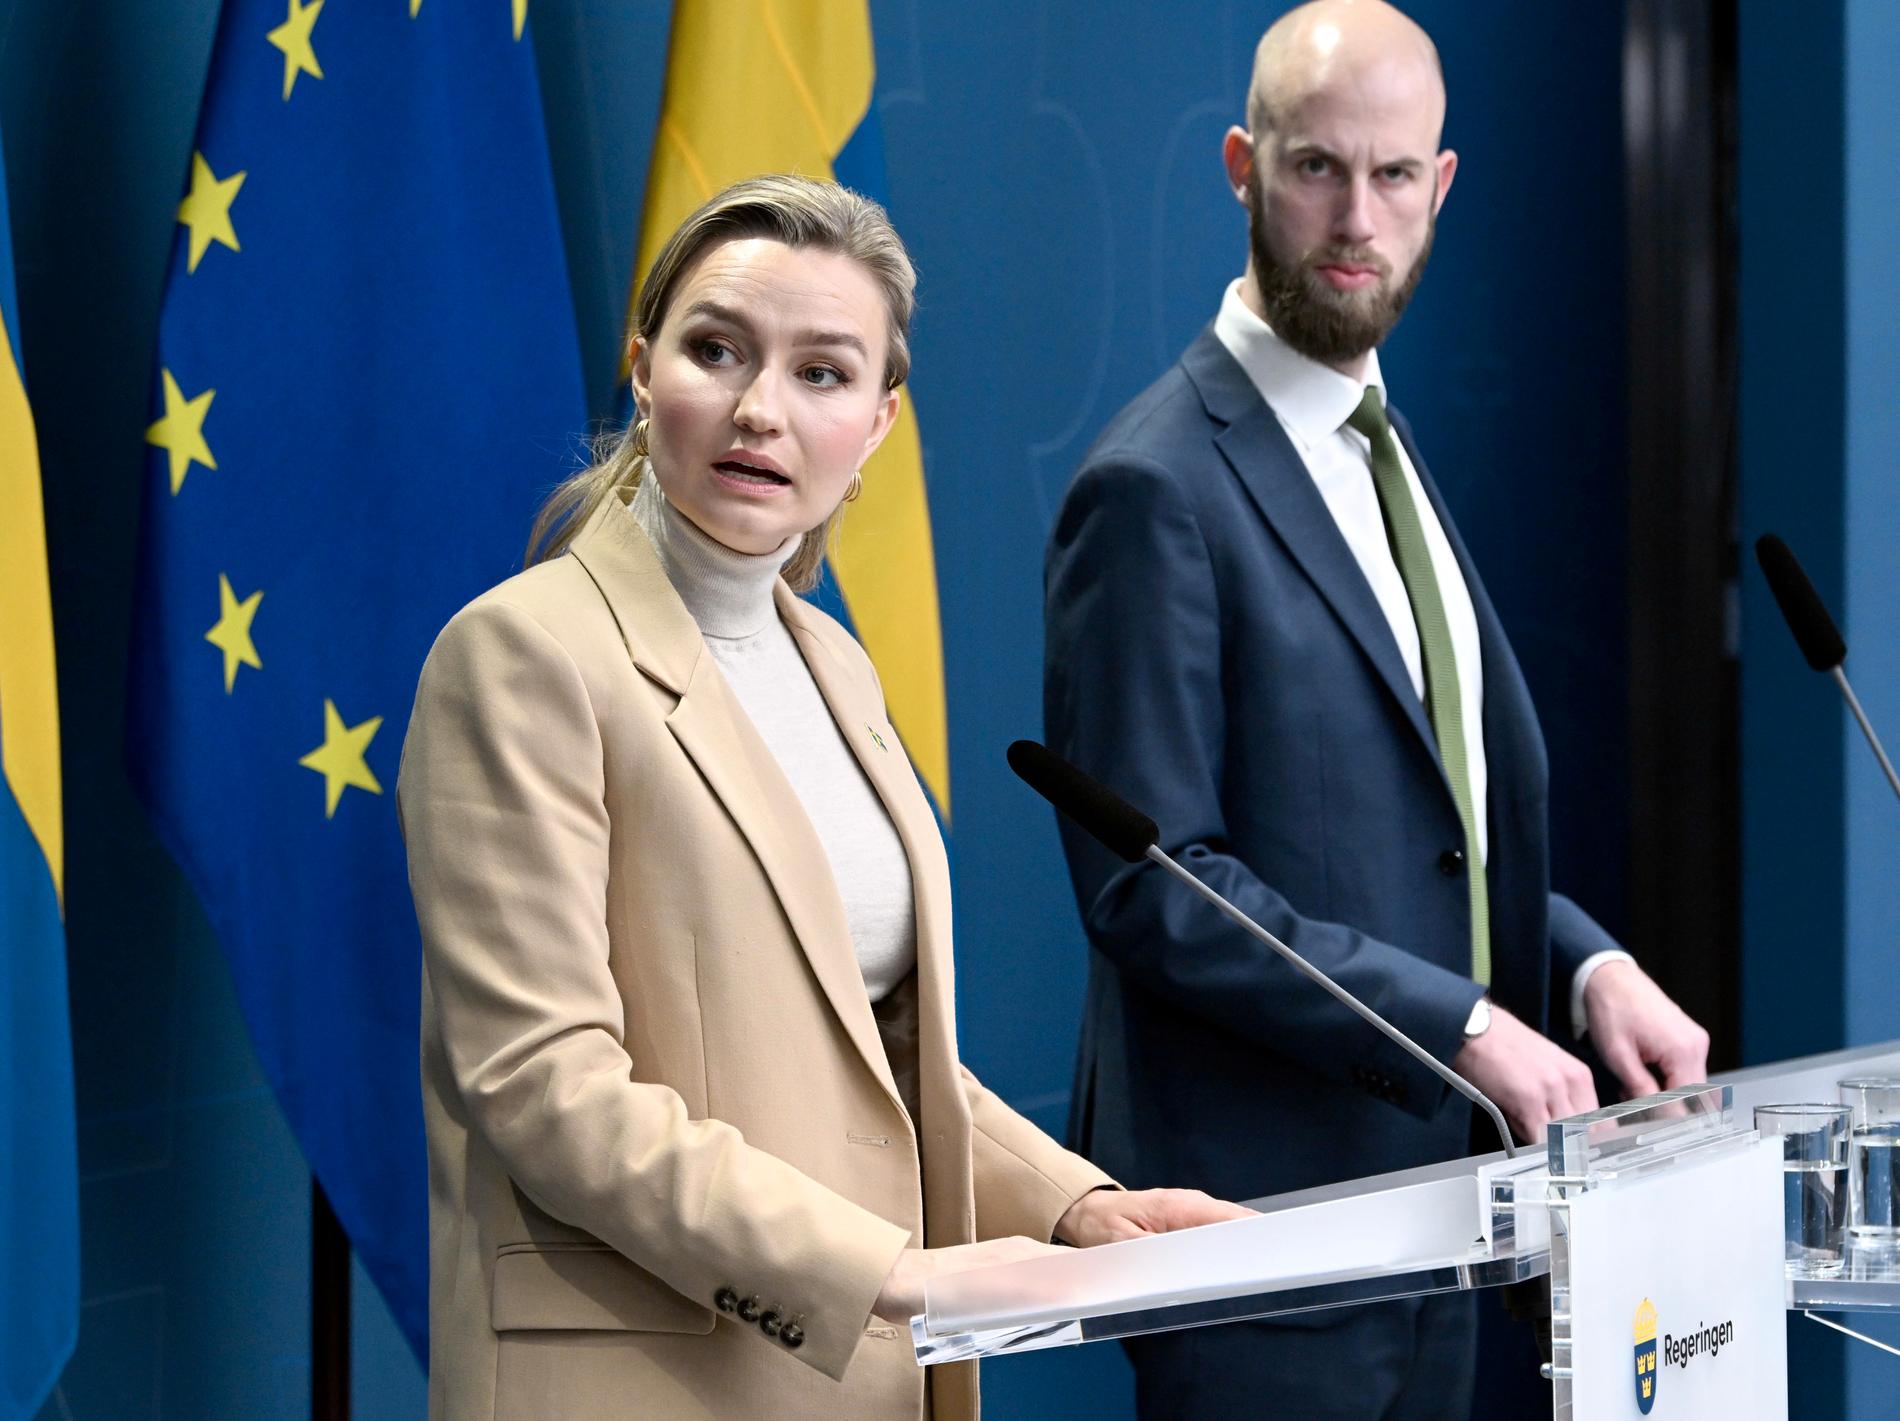 Ministrarna Ebba Busch (KD) och Carl-Oskar Bohlin (M) informerar om vikten av krisberedskap vid eventuellt strömavbrott den 21 december. 